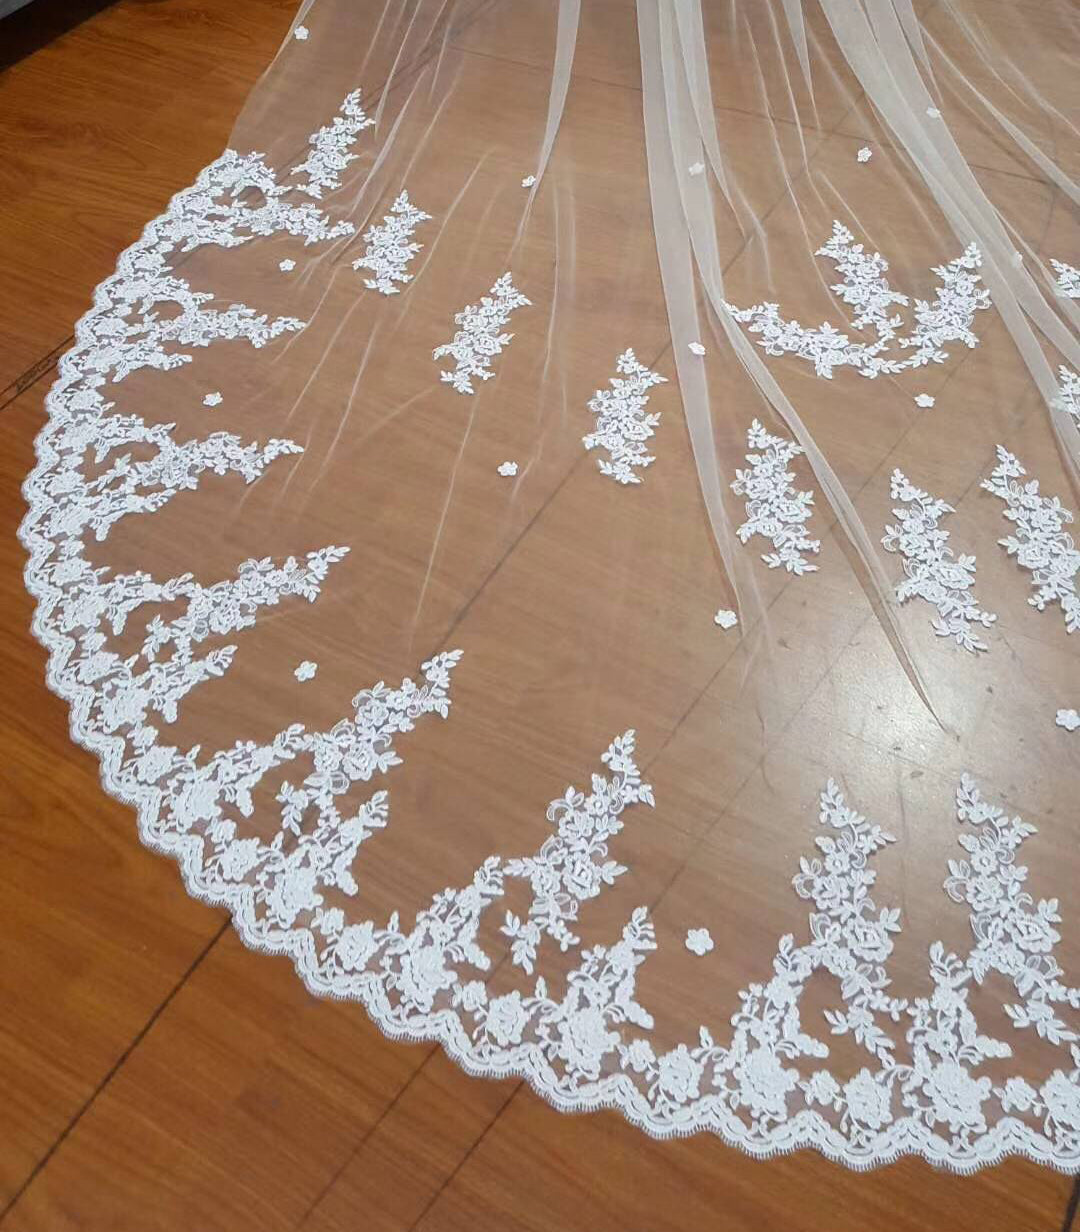 Charming Tulle Lace Applique Chapel Veils Long Wedding Veil